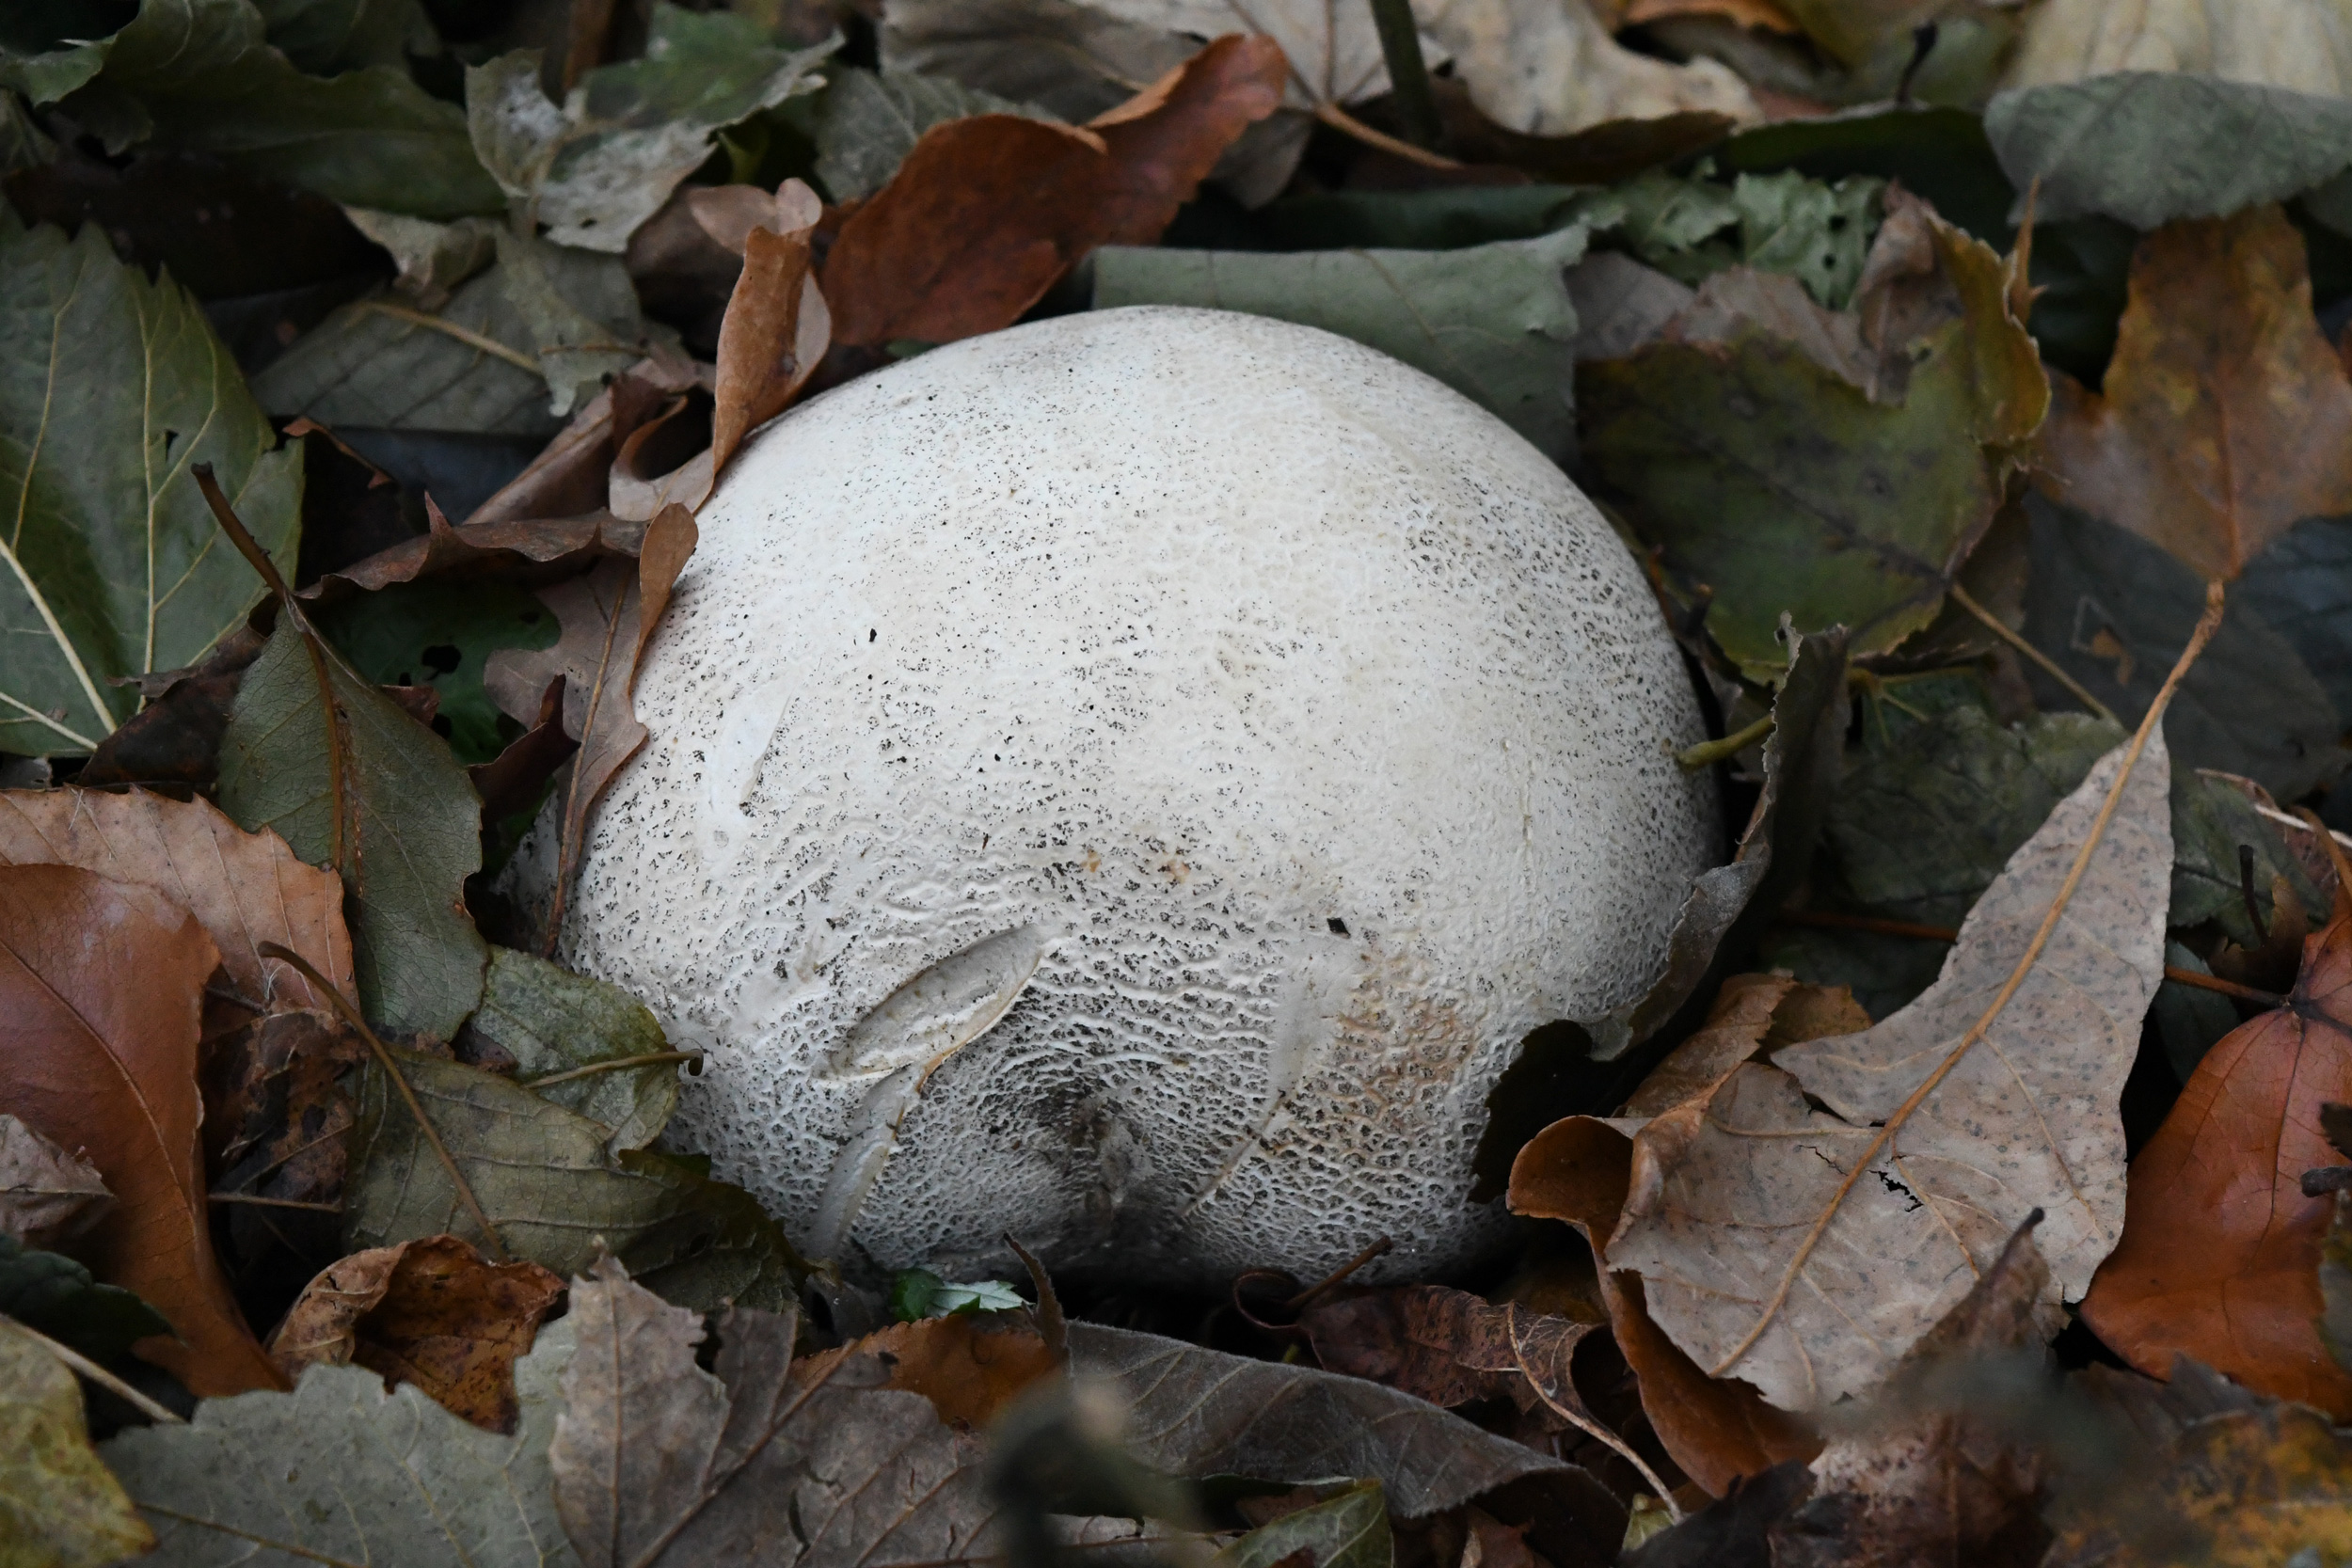 Giant puffball mushroom, Prospect Park